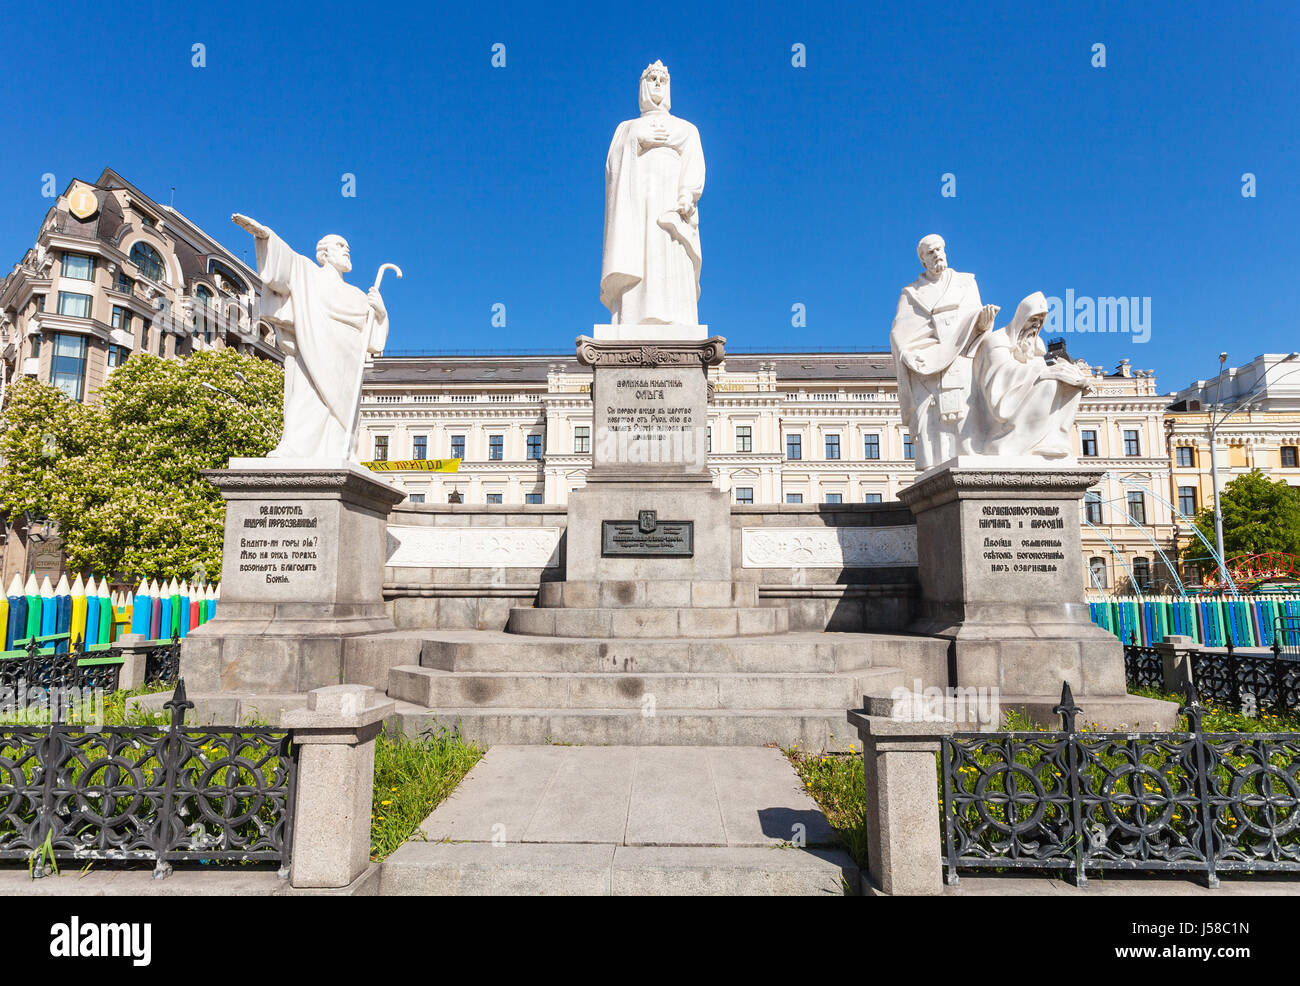 Kiew, UKRAINE - 5. Mai 2017: das Denkmal für Prinzessin Olga, Cyril und Methodius gleich den Aposteln und Str. Andrew der Apostel und Gebäude von ukrain Stockfoto